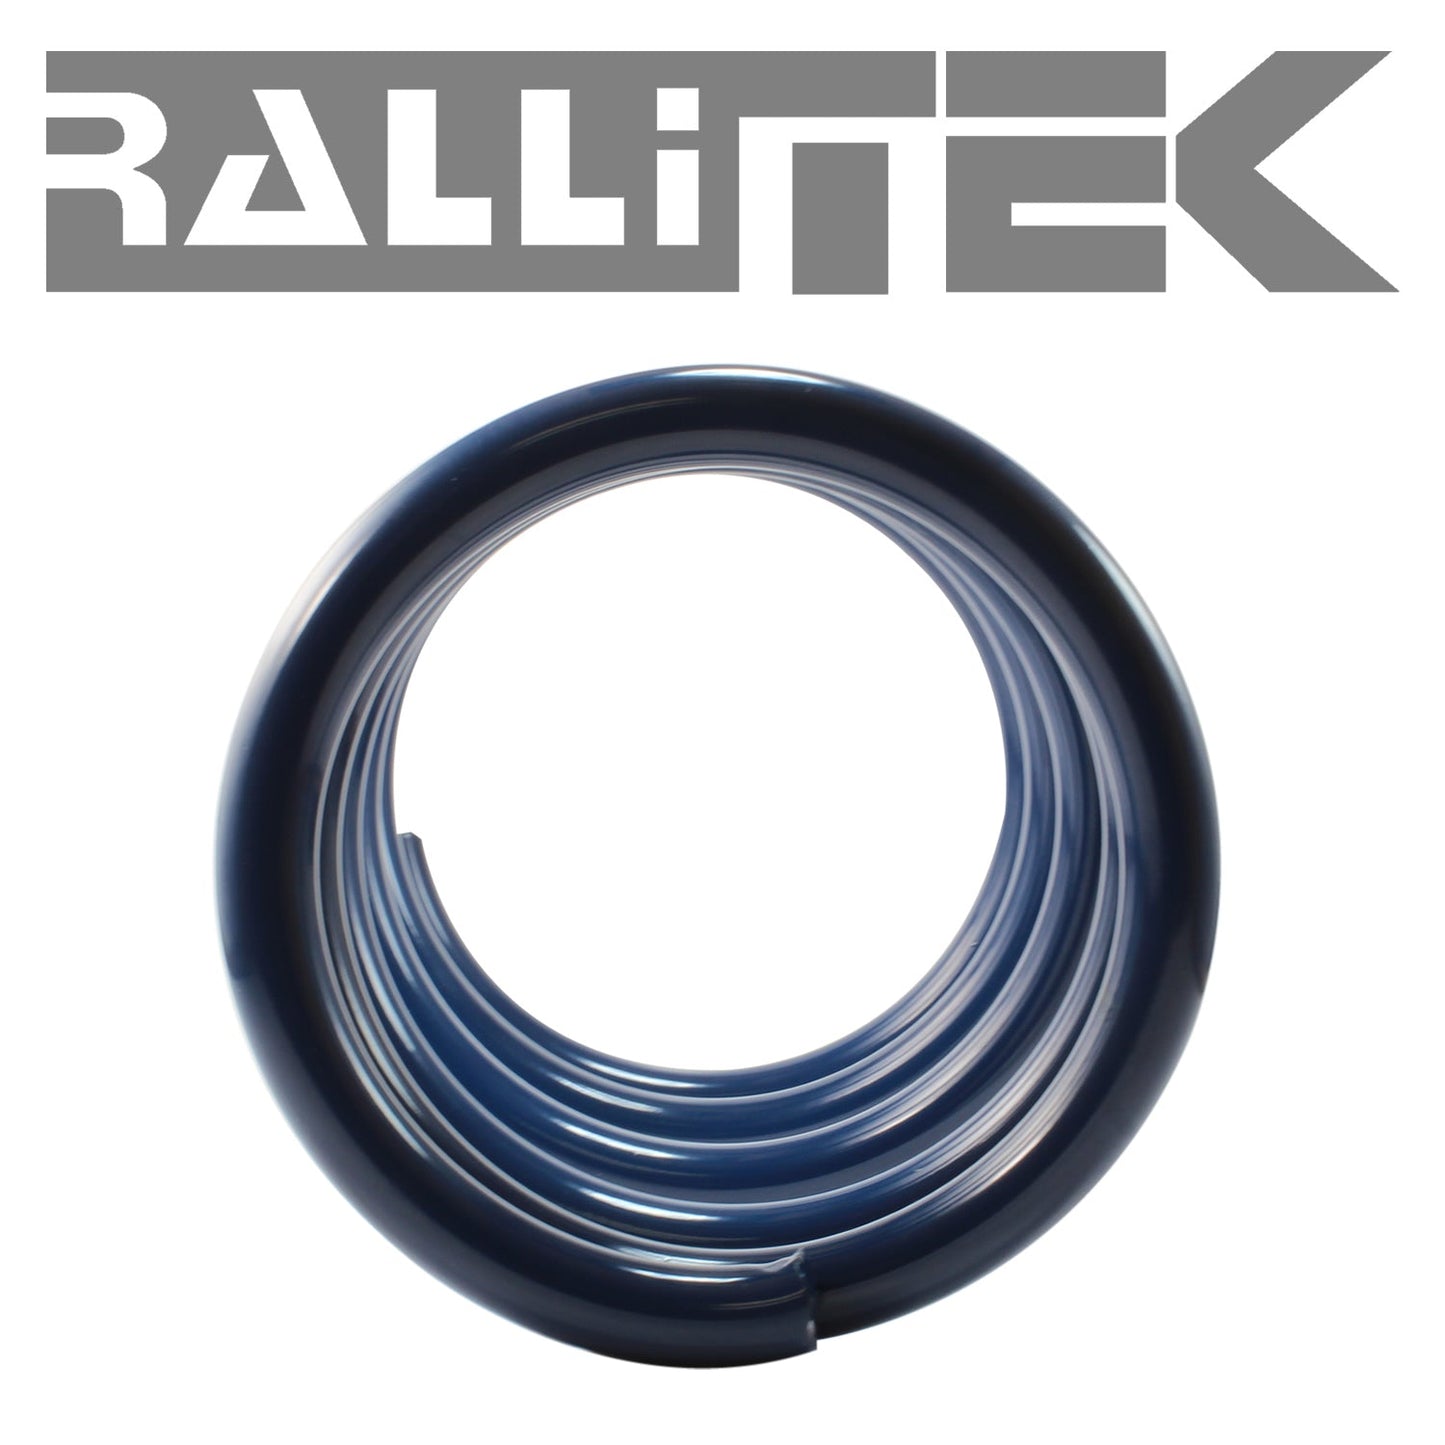 RalliTEK 1.25" Front Raised Sport Spring Kit - Crosstrek XV 2013-2017